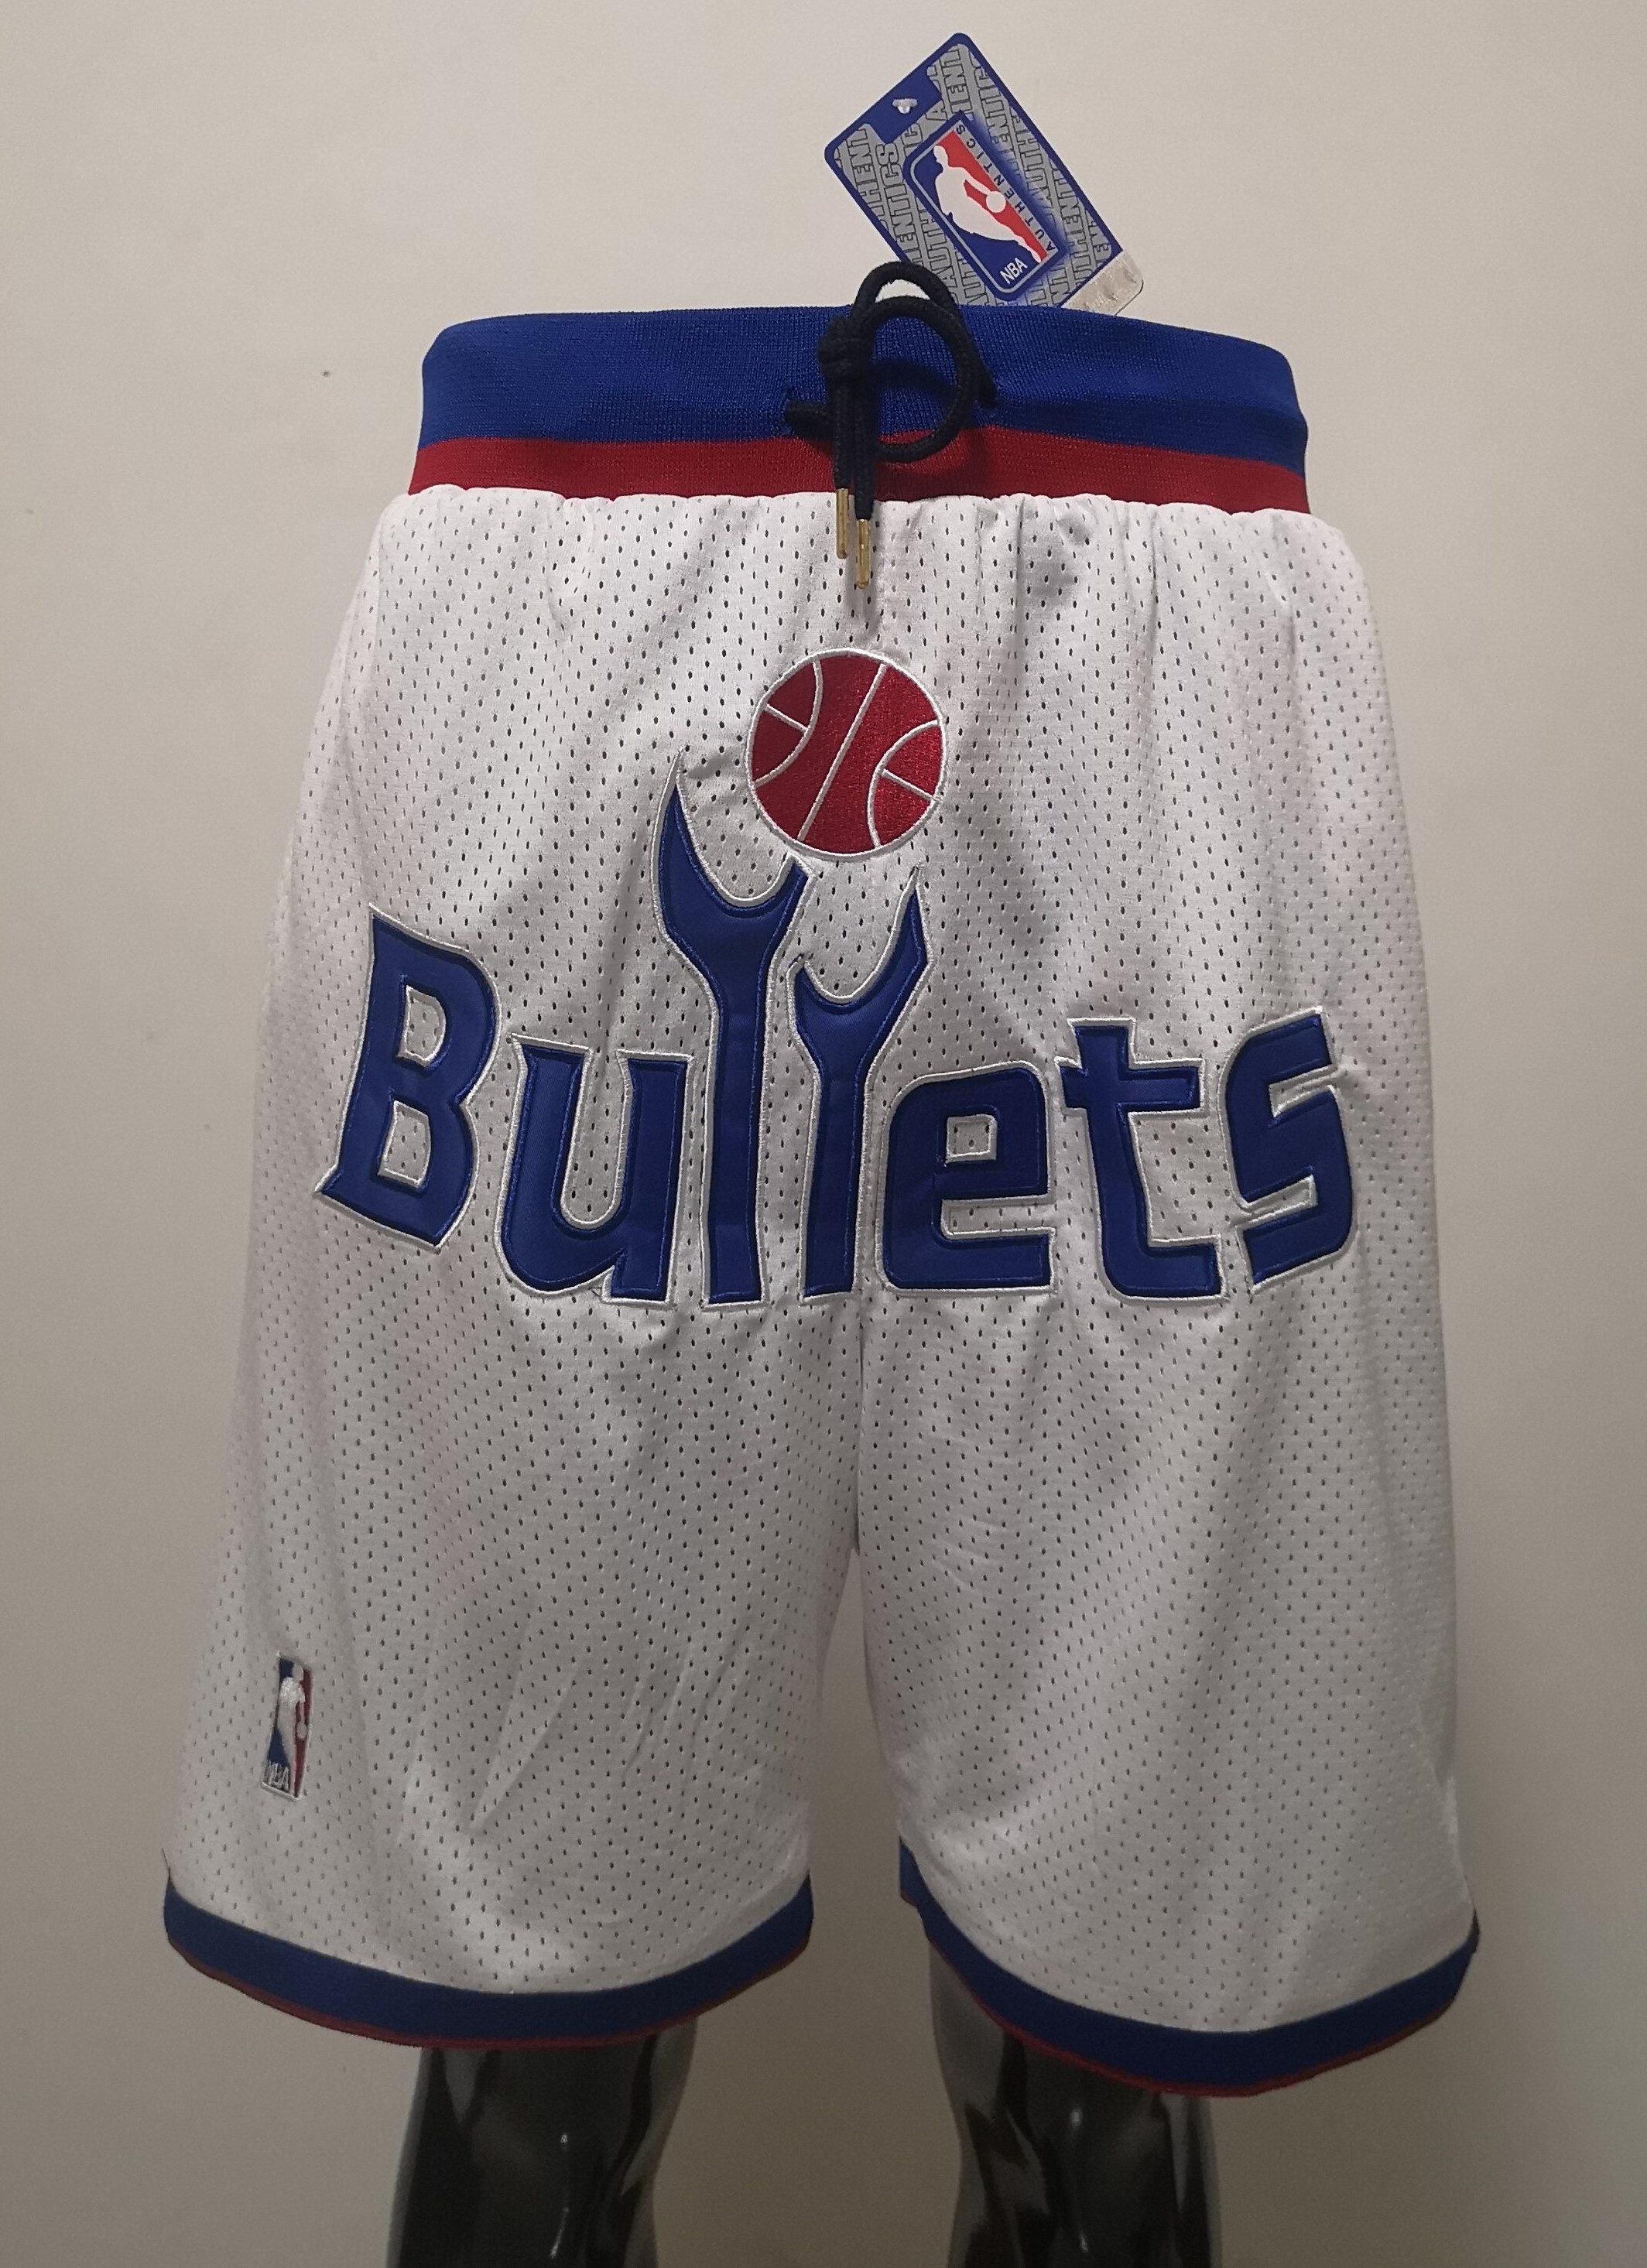 2020 Men NBA Chicago Bulls white 04 shorts